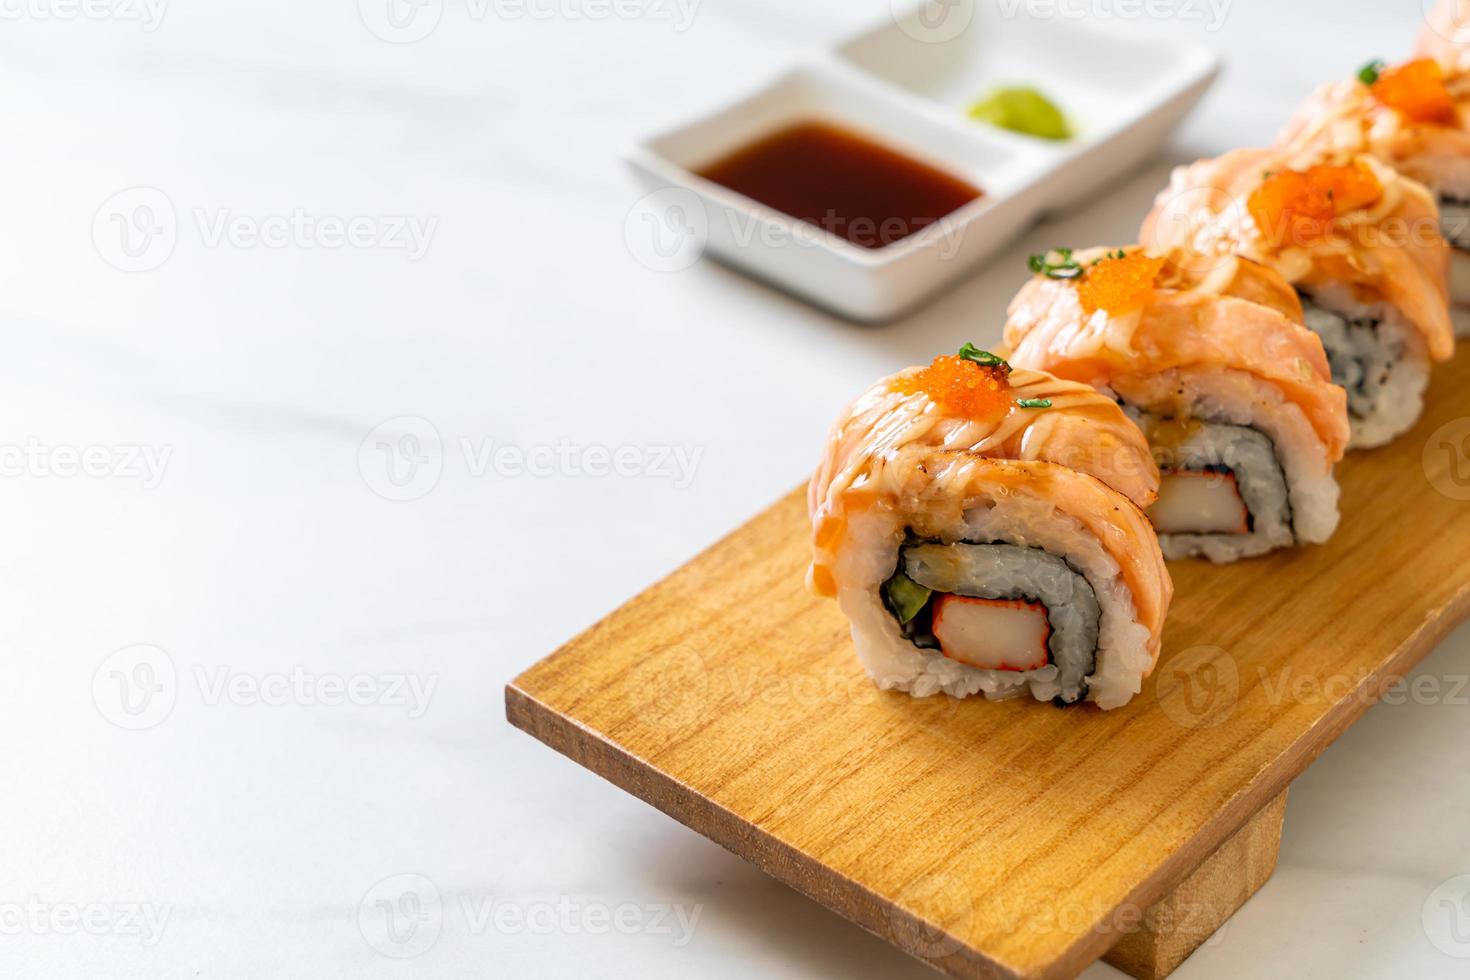 rotolo di sushi di salmone alla griglia con salsa - stile giapponese foto